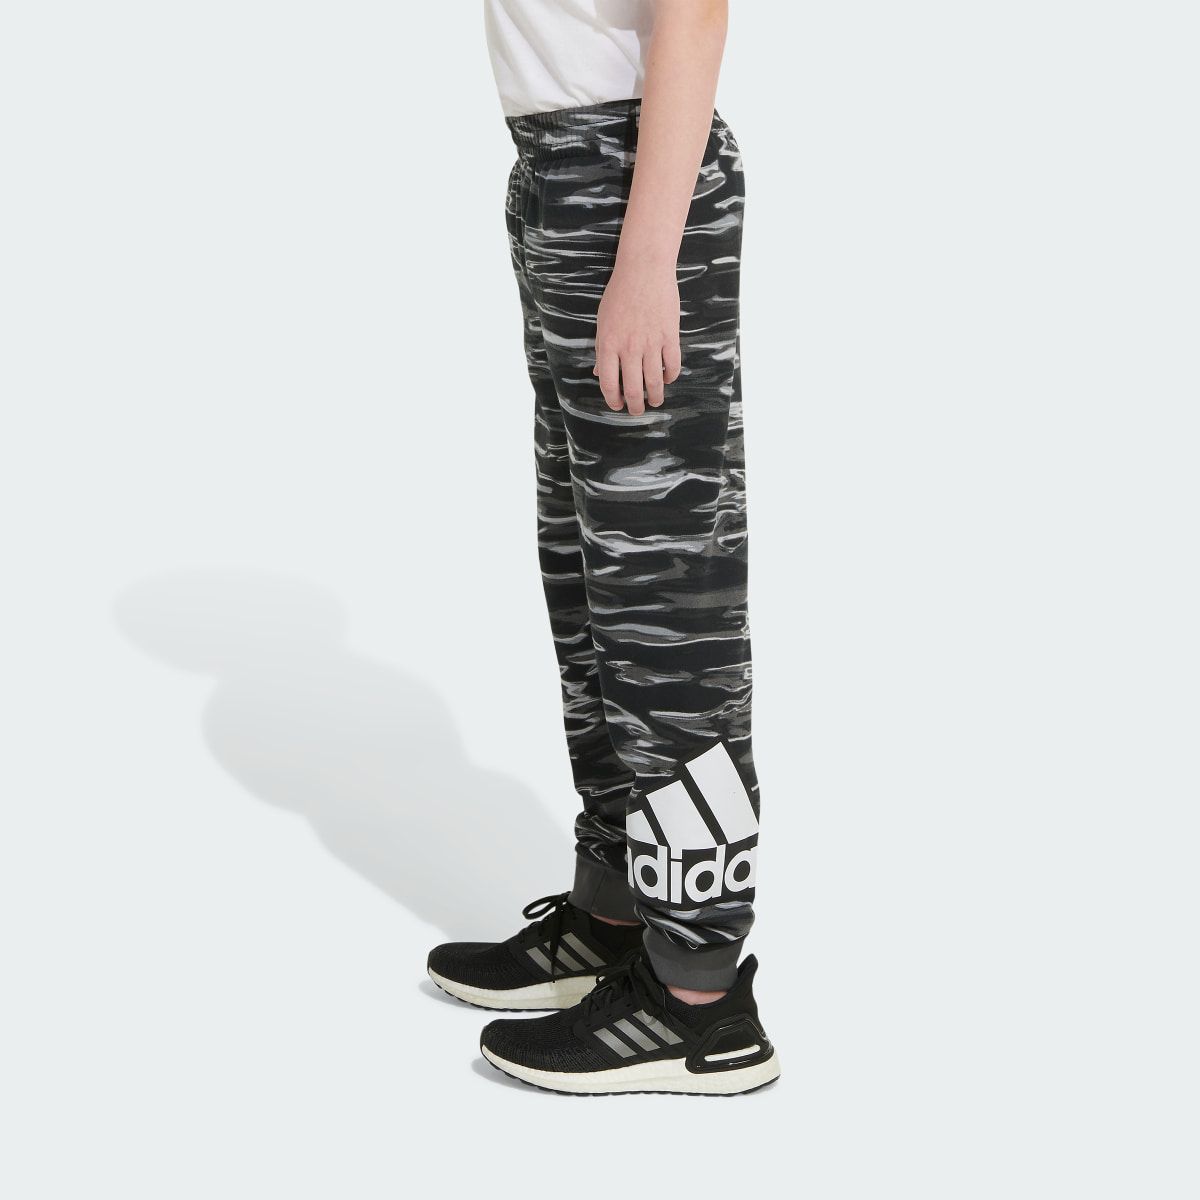 Adidas Allover Print Liquid Camo Jogger Pants. 5